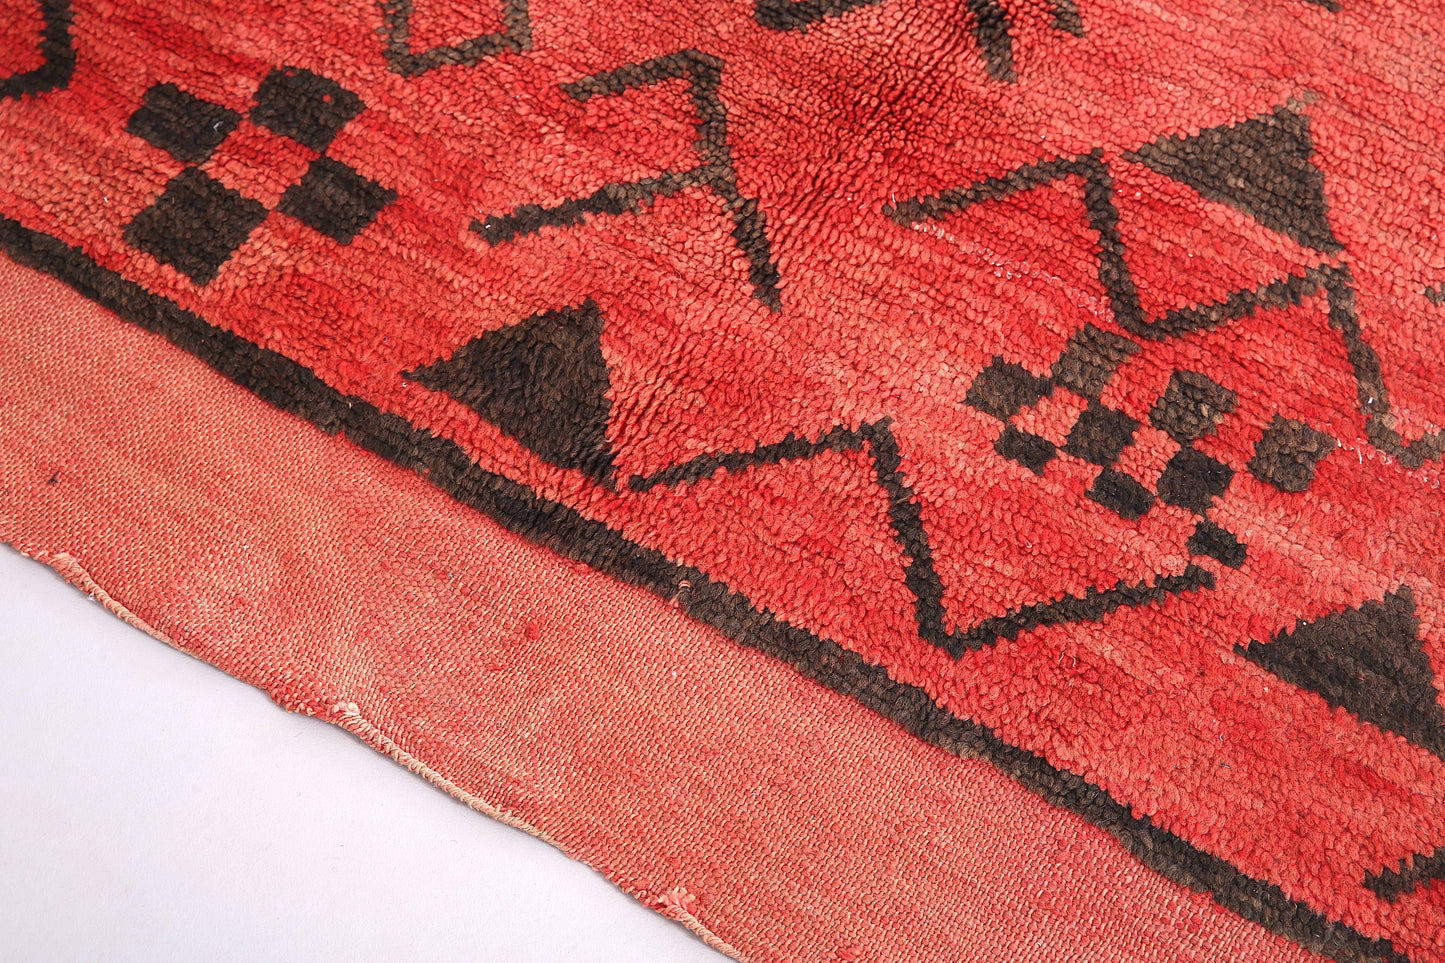 Roter marokkanischer Vintage-Teppich 6,3 FT x 7,4 FT - roter marokkanischer Teppich - Vintage-Tribal-Teppich - handgemachter Berberteppich - einzigartiger Vintage-Teppich - Boho-Teppich